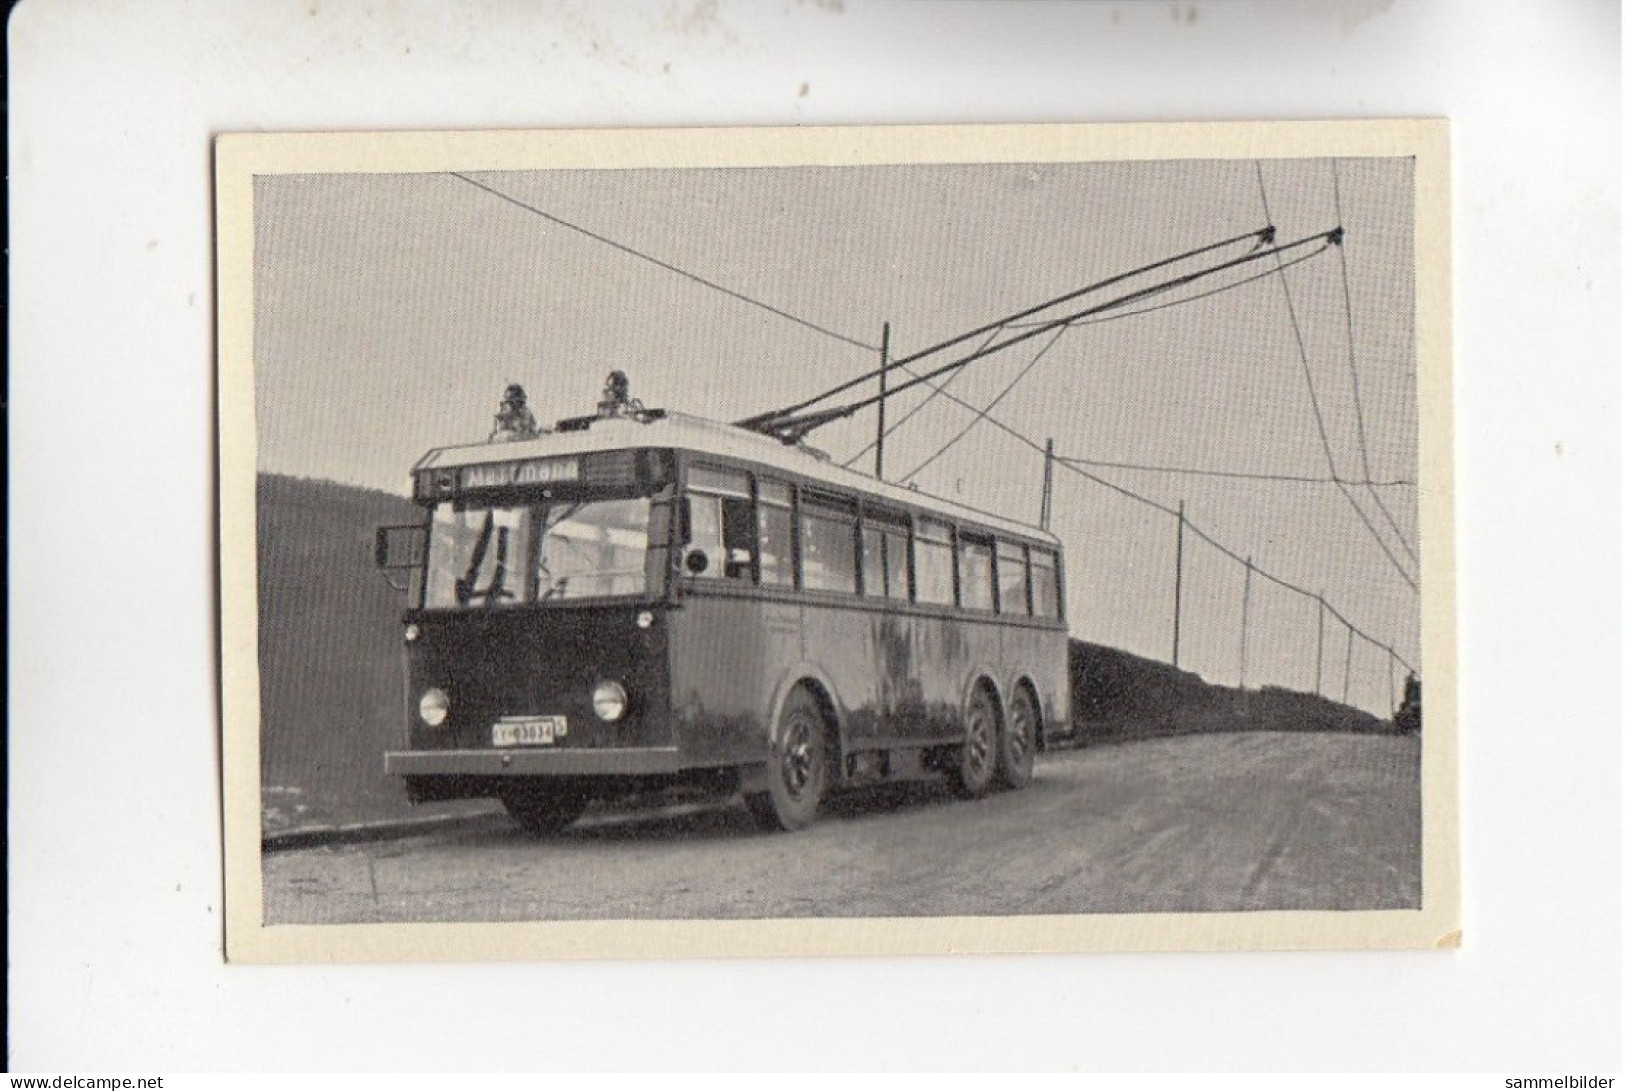 Mit Trumpf Durch Alle Welt Moderne Verkehrsentwicklung Elektro - Omnibus Mettmann - Gruiten  C Serie 18 # 2 Von 1934 - Other Brands